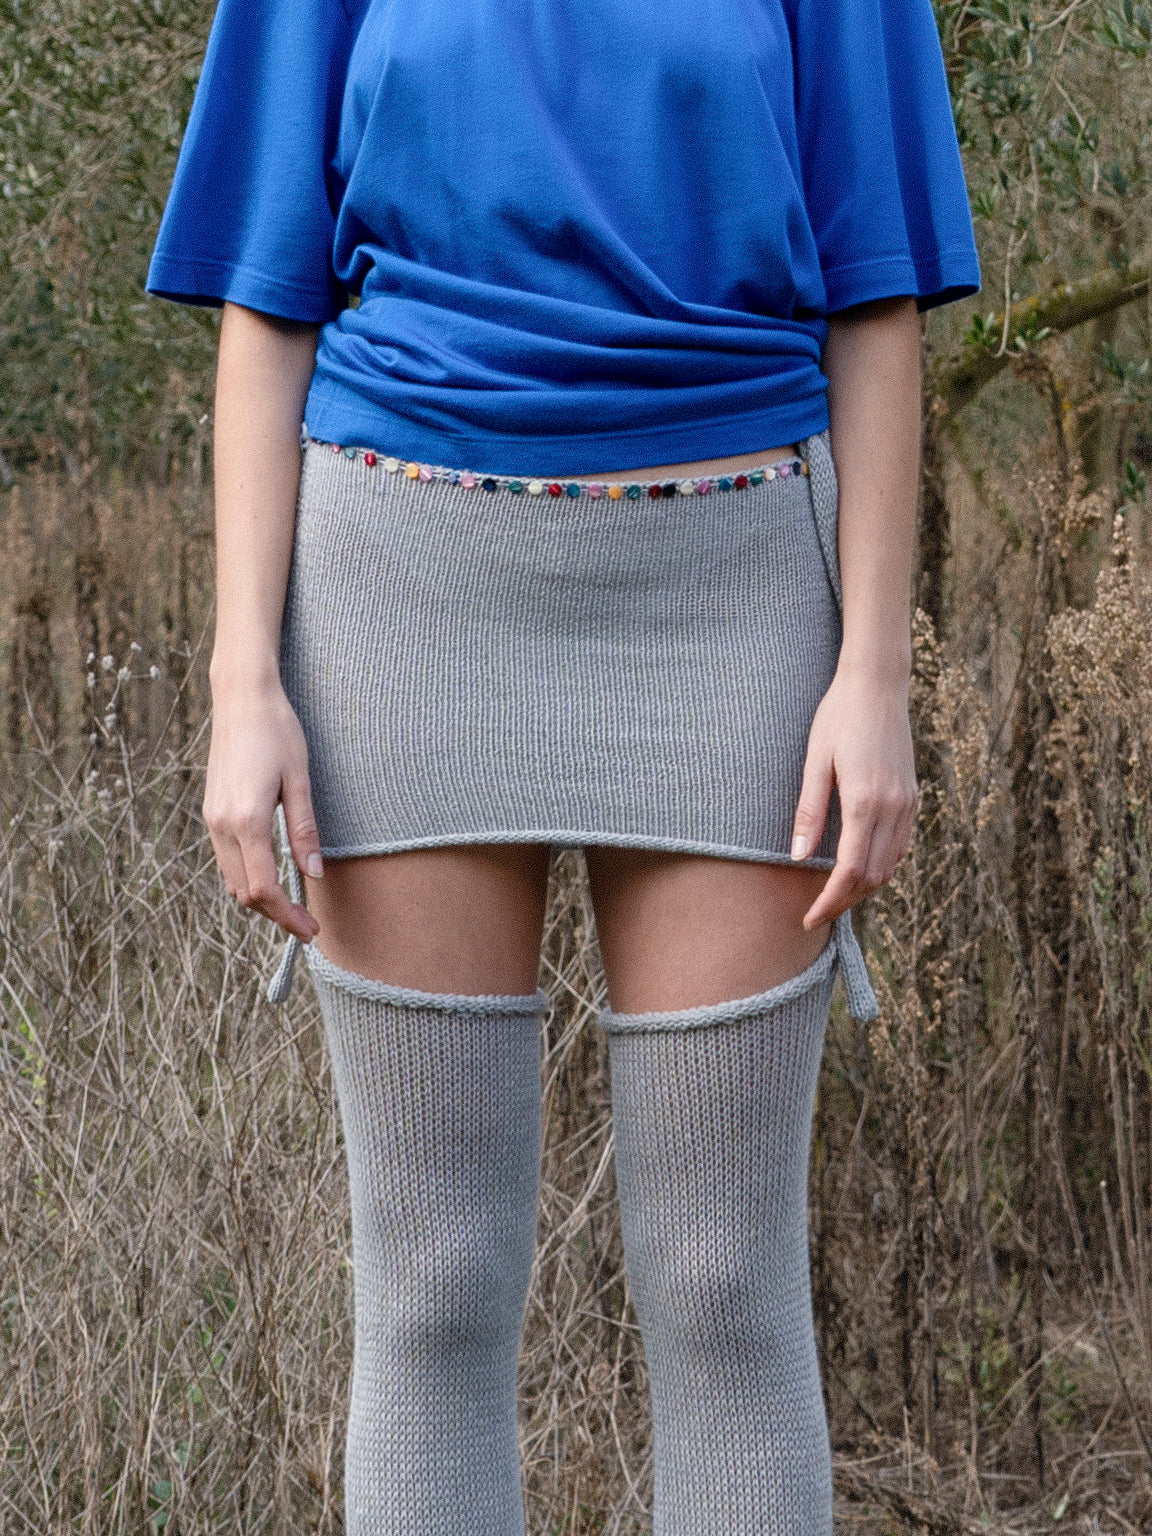 Dirty Buttons Skirt Short